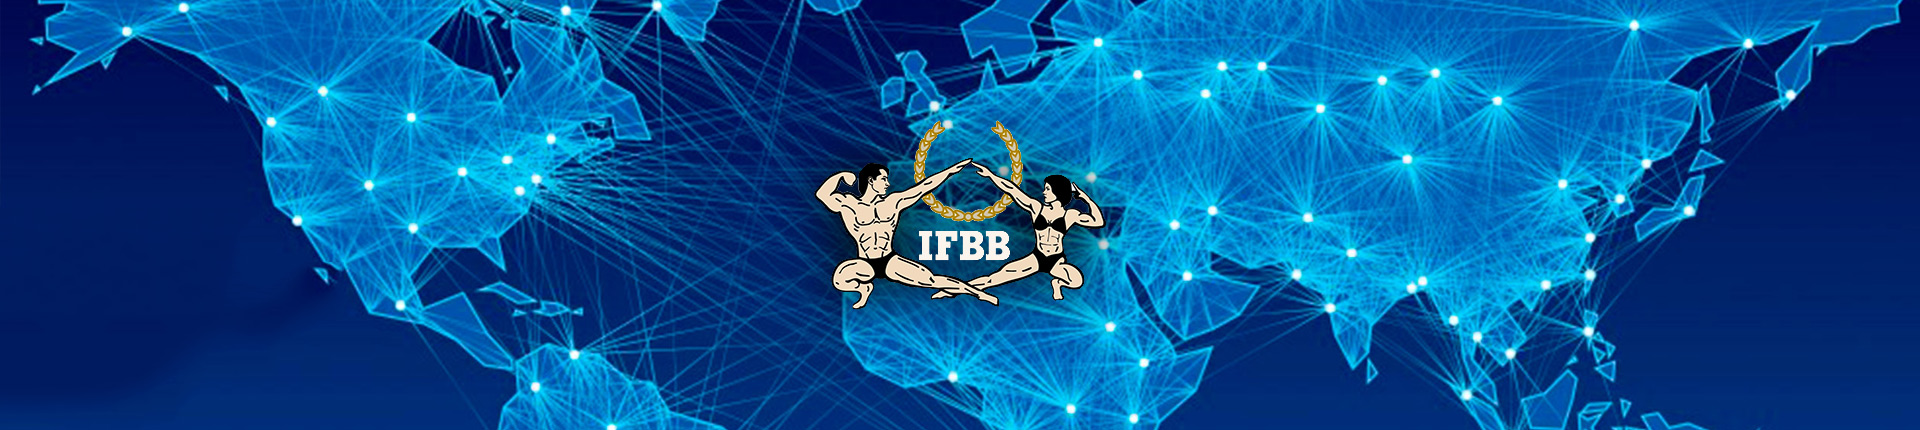 Skład reprezentacji na Pucharu Prezydenta IFBB 2019